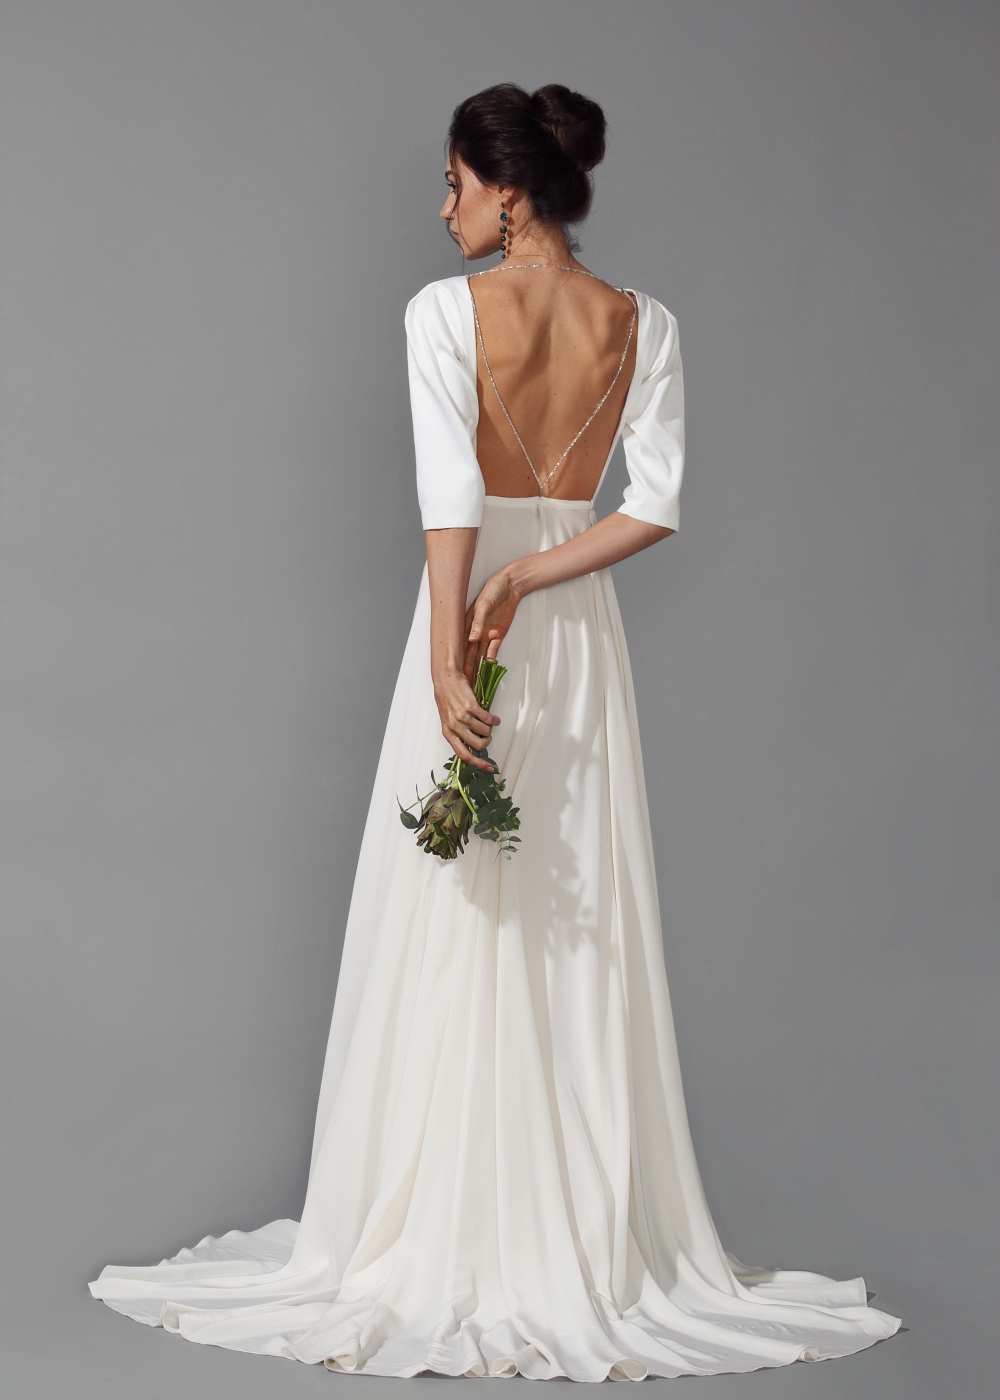 Свадебное платье с открытой спиной и рукавами.
